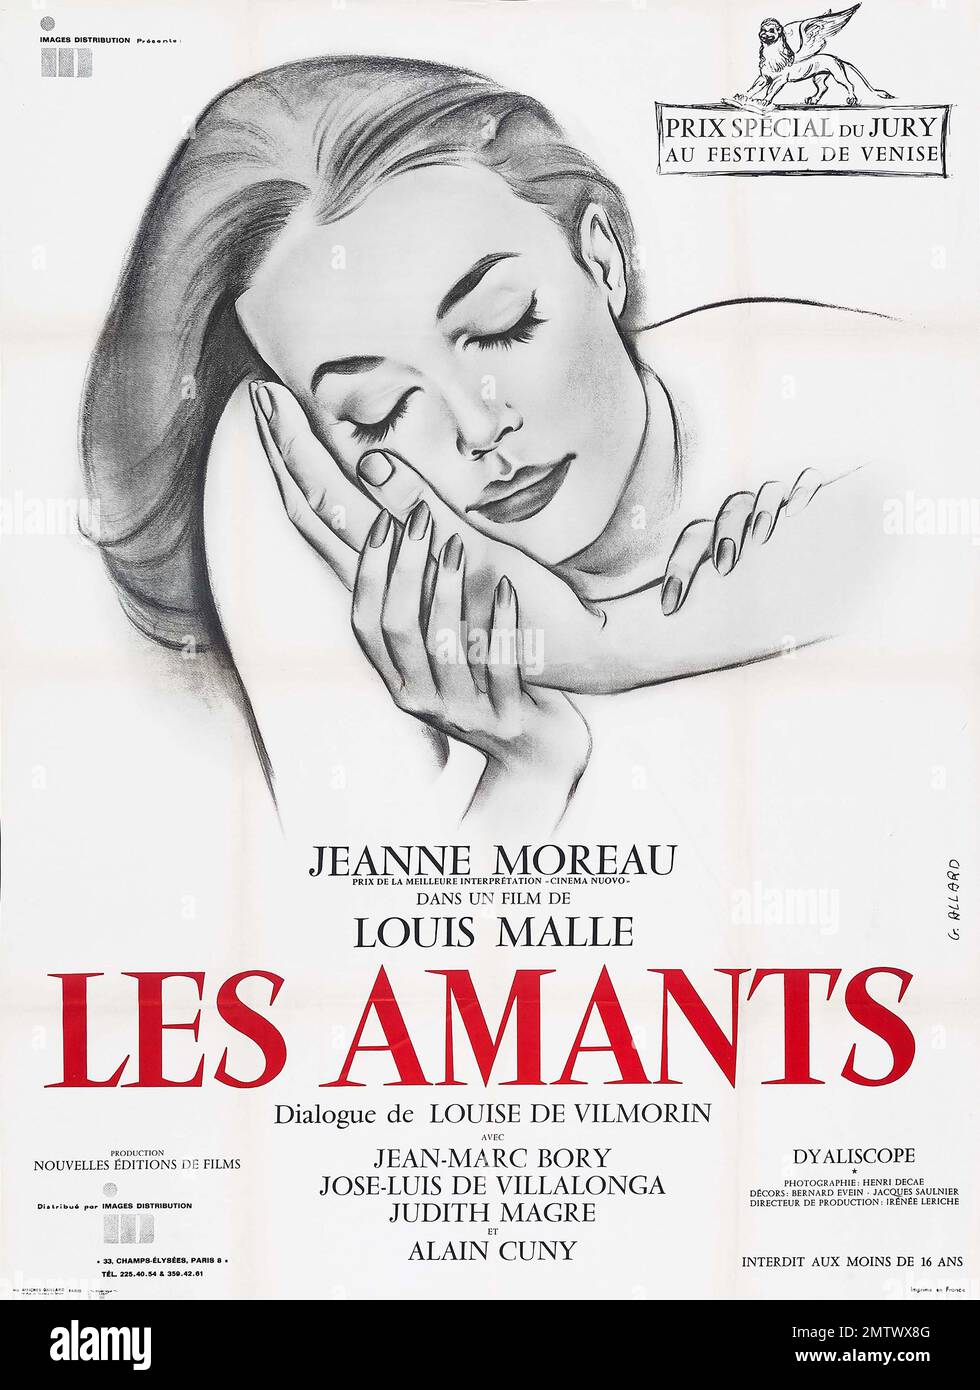 LES AMANTS (The Lovers) - Louis Malle